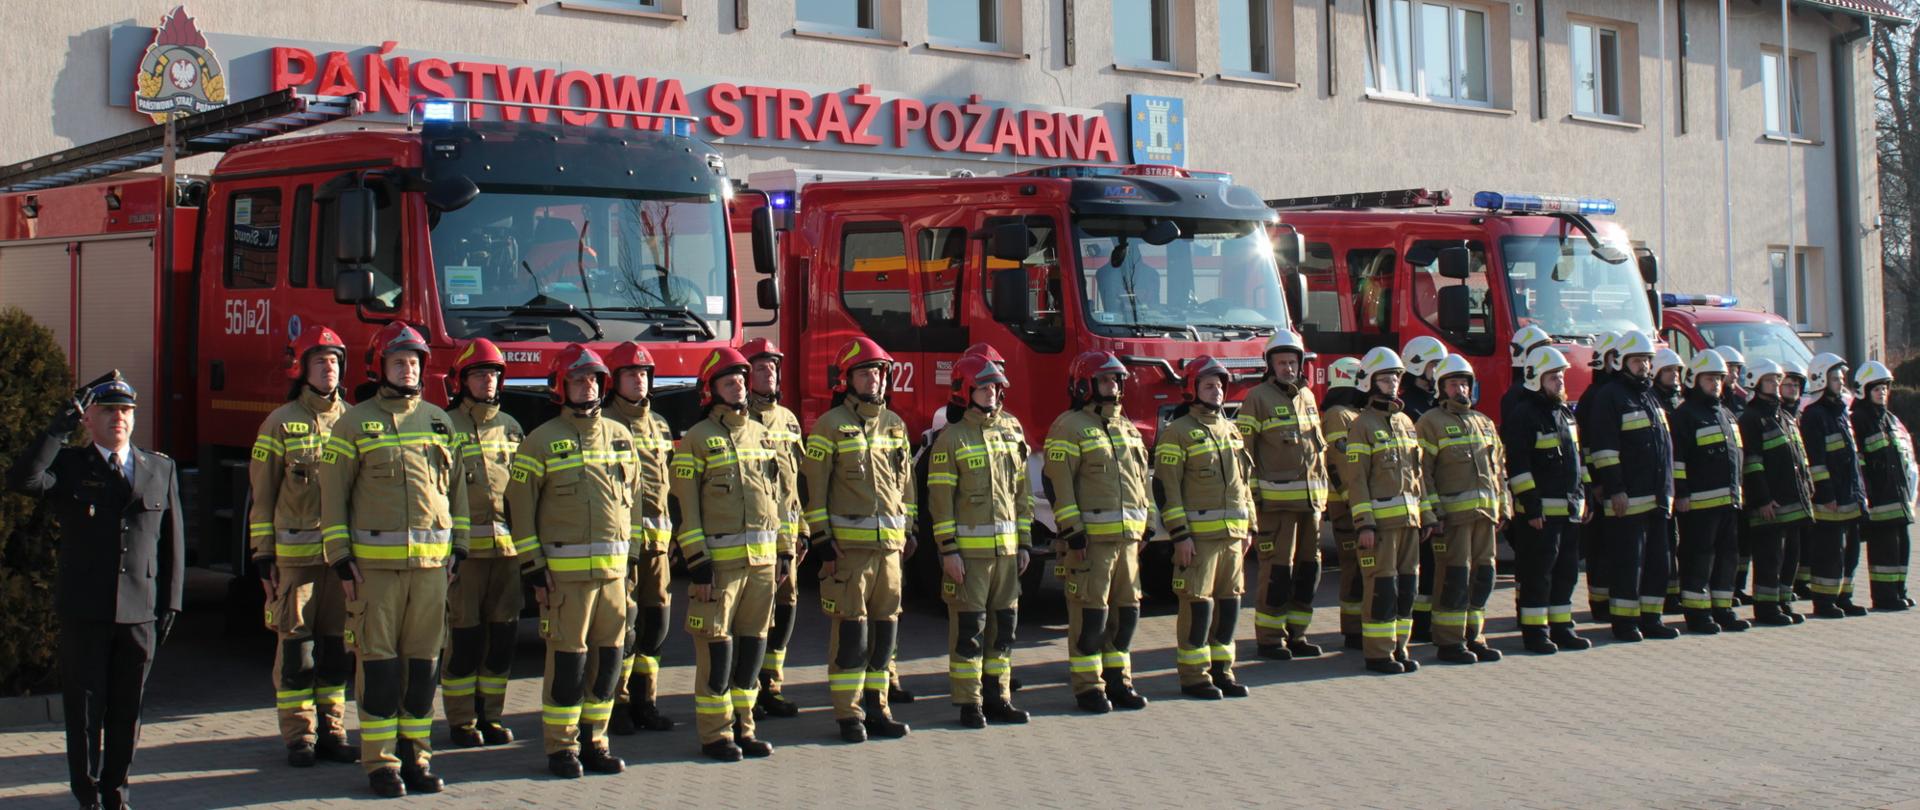 strażacy stoją w dwuszeregu przed budynkiem komendy powiatowej w pleszewie, za nimi widoczne wozy strażackie